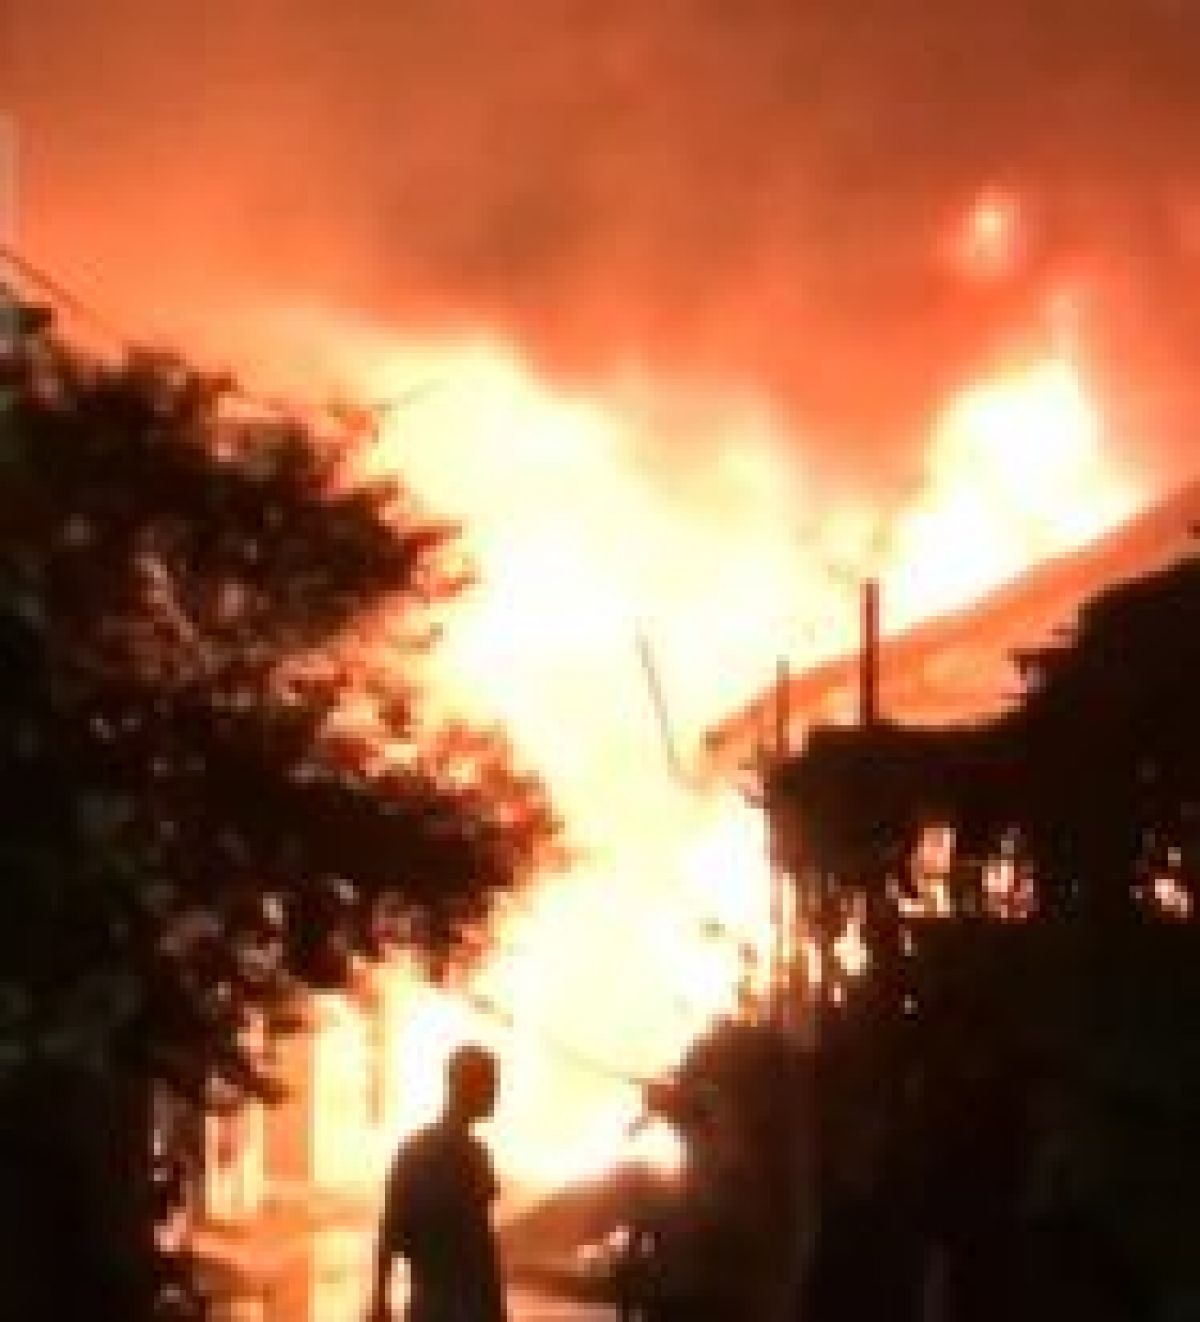 Một cửa hàng bán phụ tùng xe máy tại TP Hội An bị cháy trong đêm